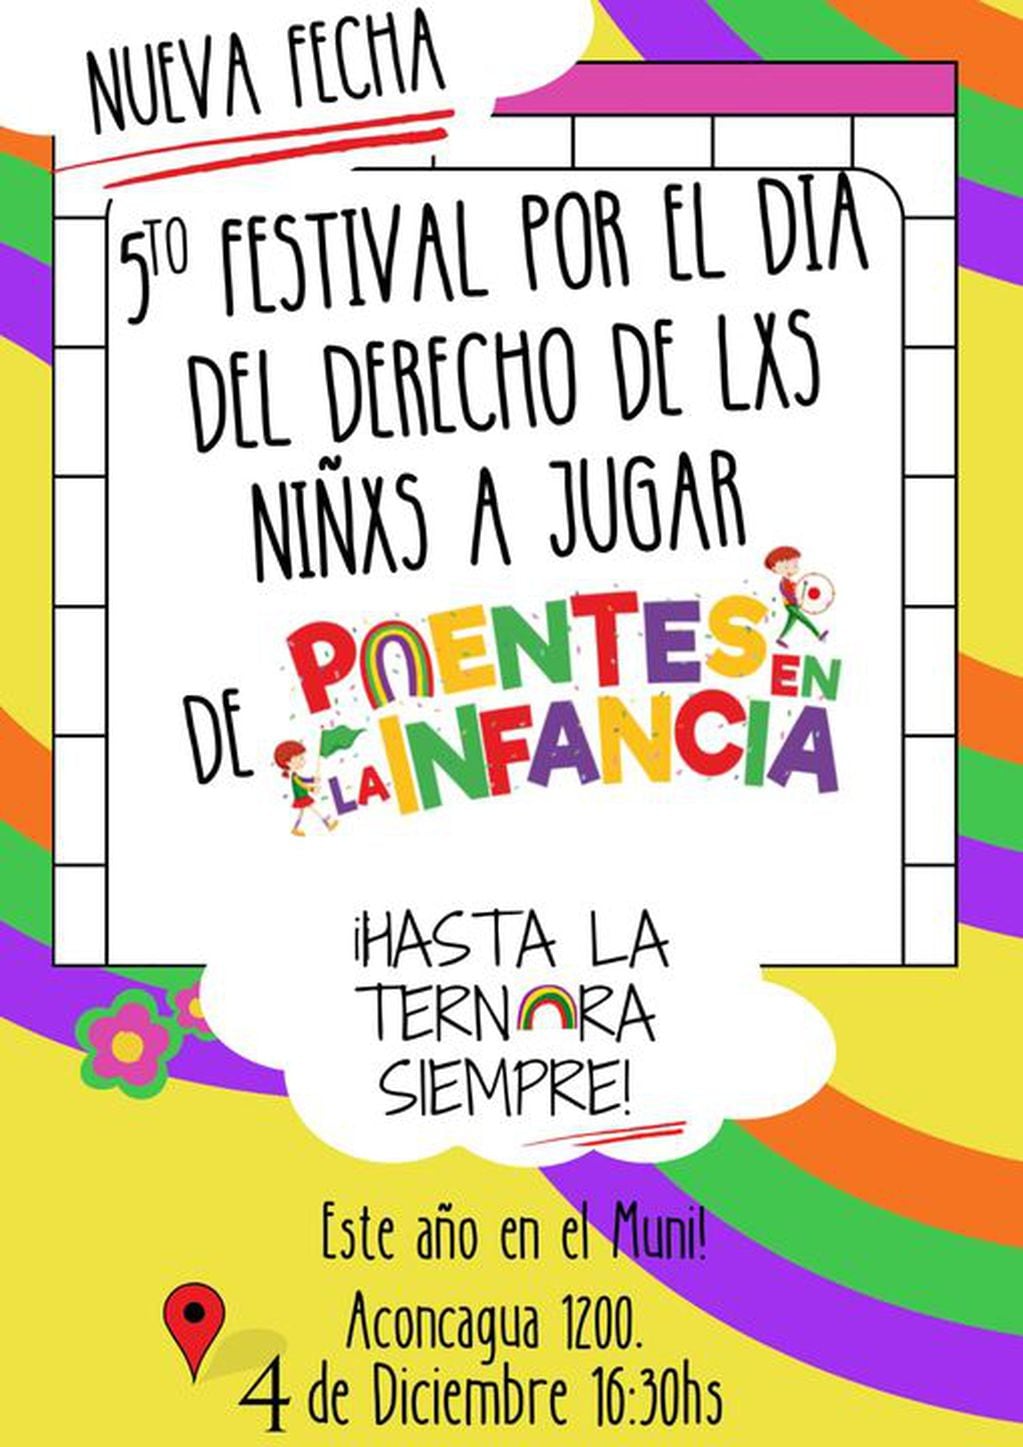 Tres Arroyos, 5to Festival por el Día del Derecho de los niños y niñas a jugar